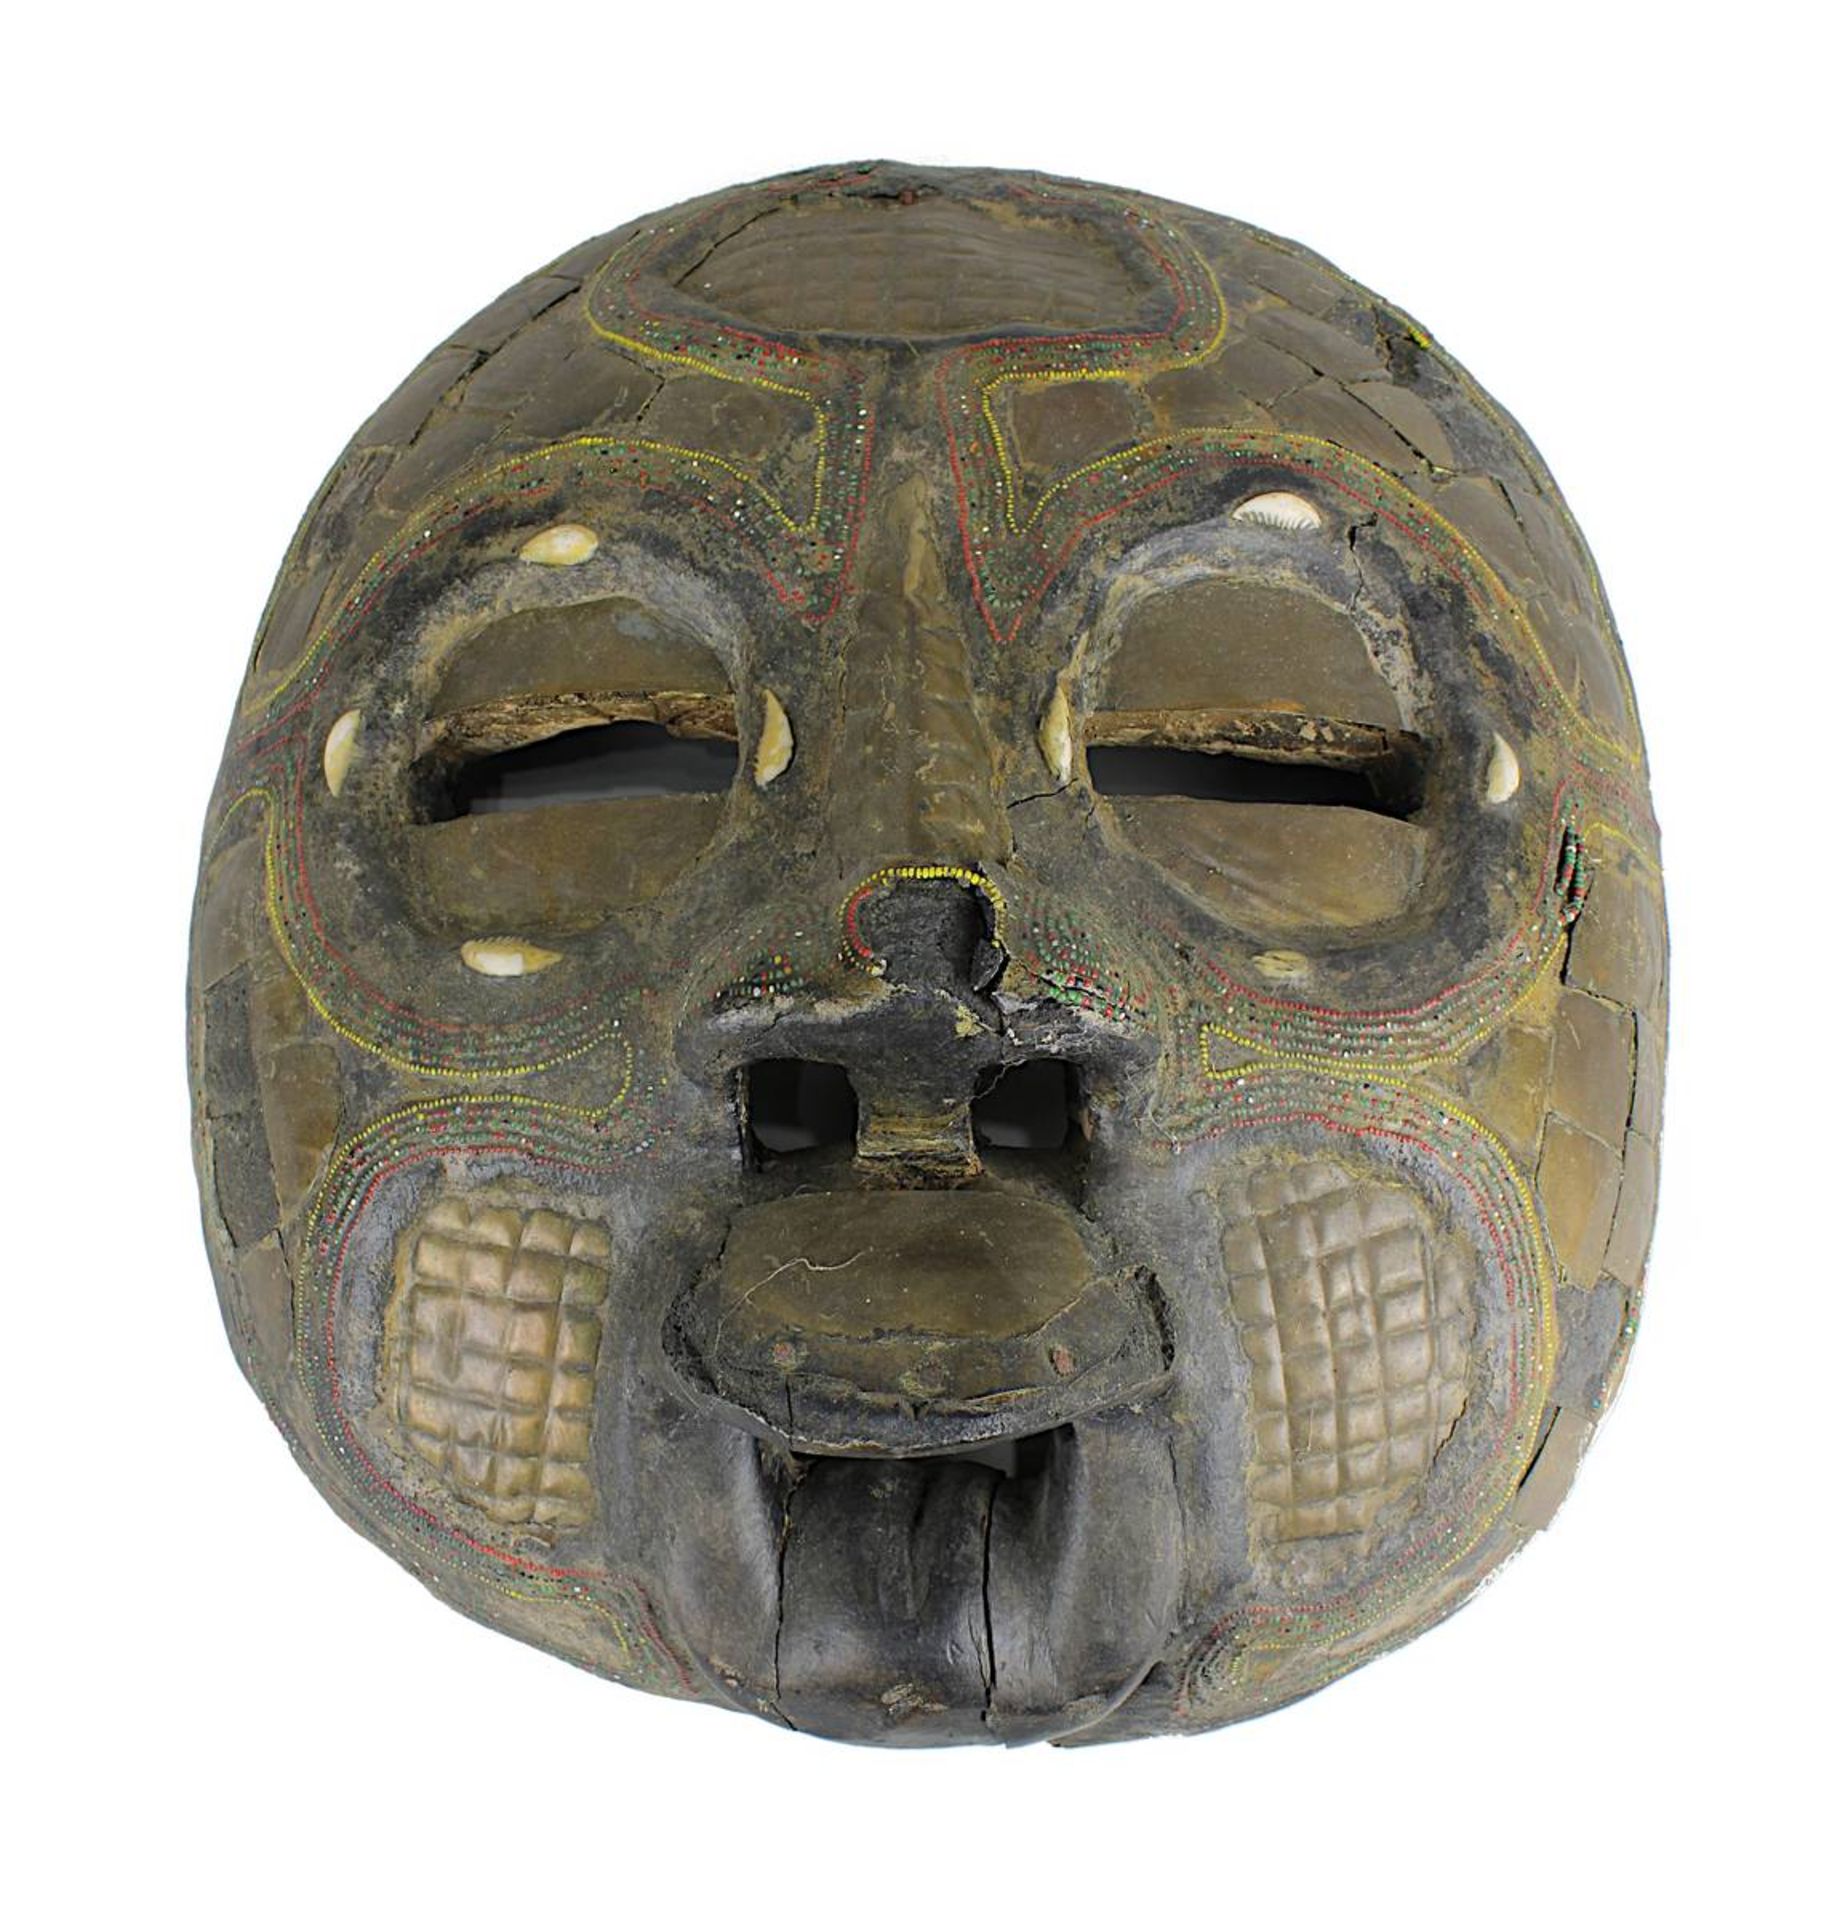 Paar Masken mit mondförmigen Gesichtern, Afrika 20. Jh., Augen mit Sehschlitzen, geöffnete Münder - Bild 2 aus 3